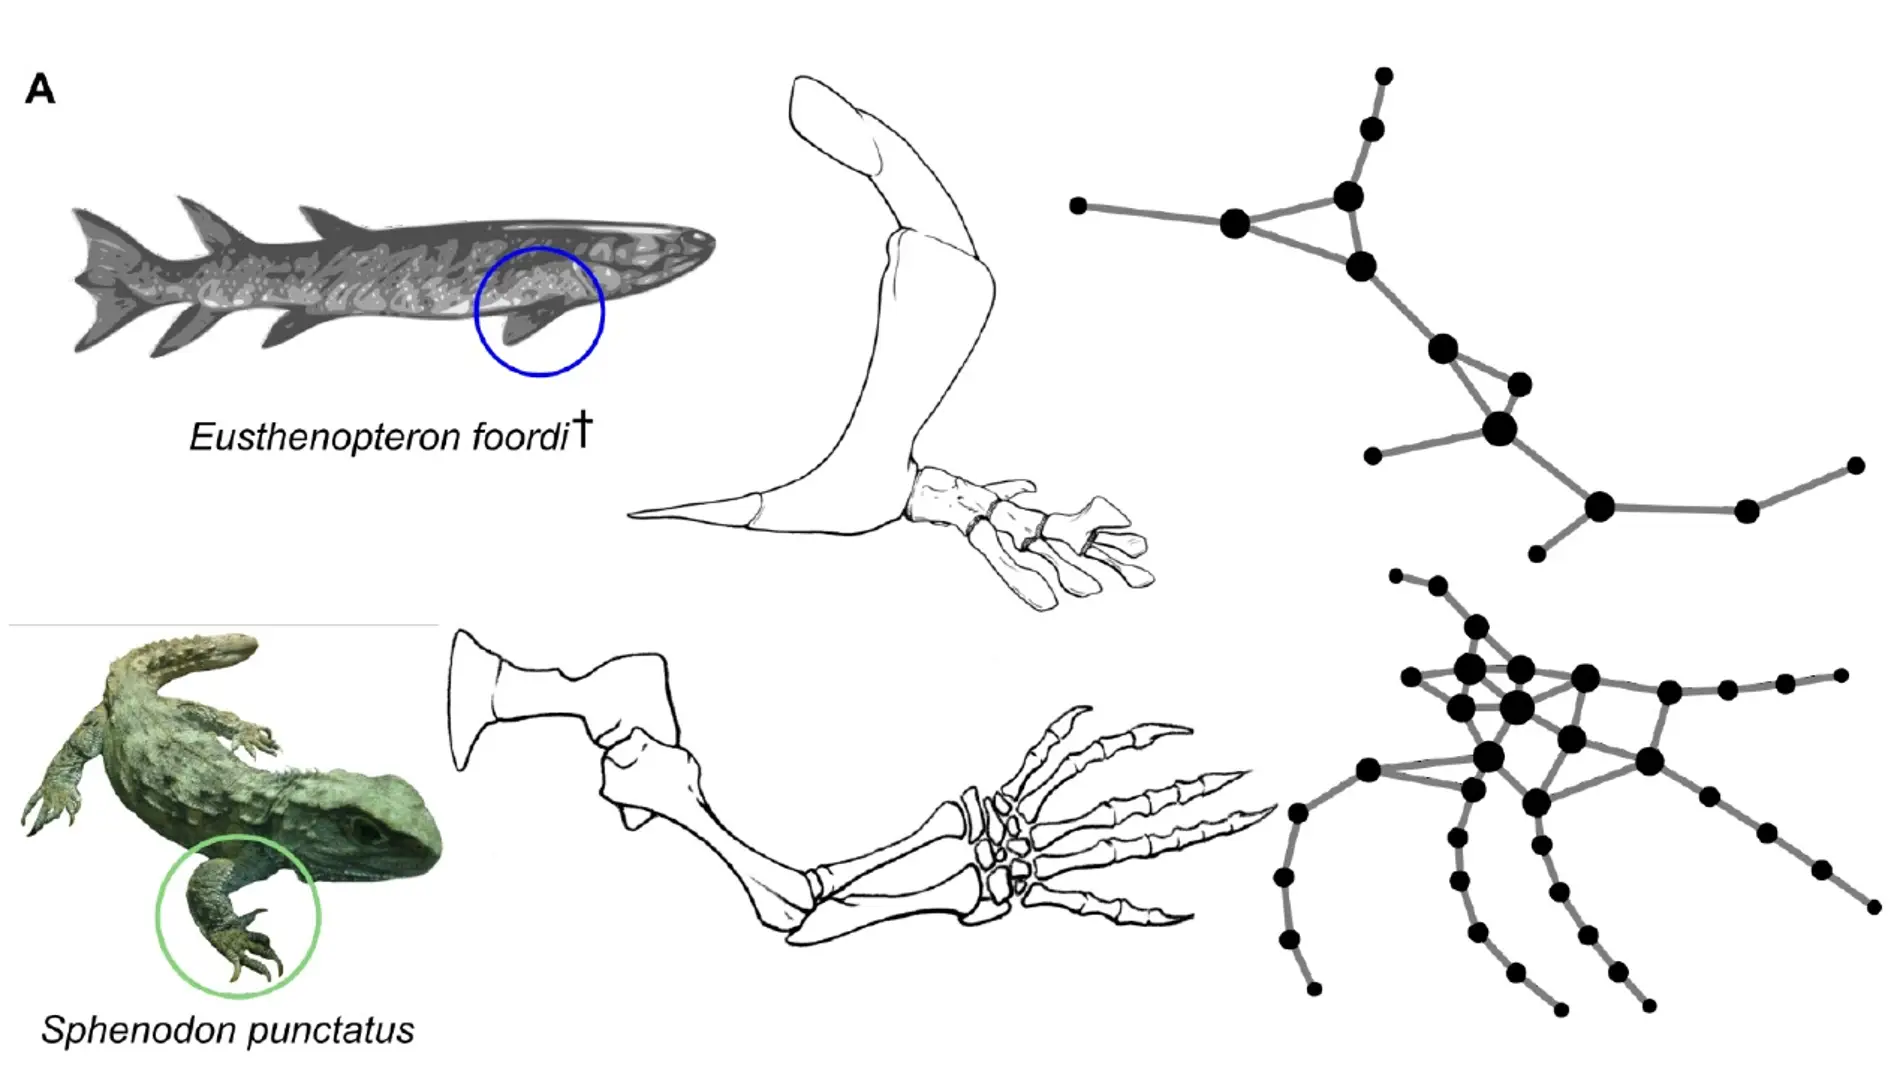 Como evolucionaron las extremidades de los vertebrados a partir de las aletas de los peces